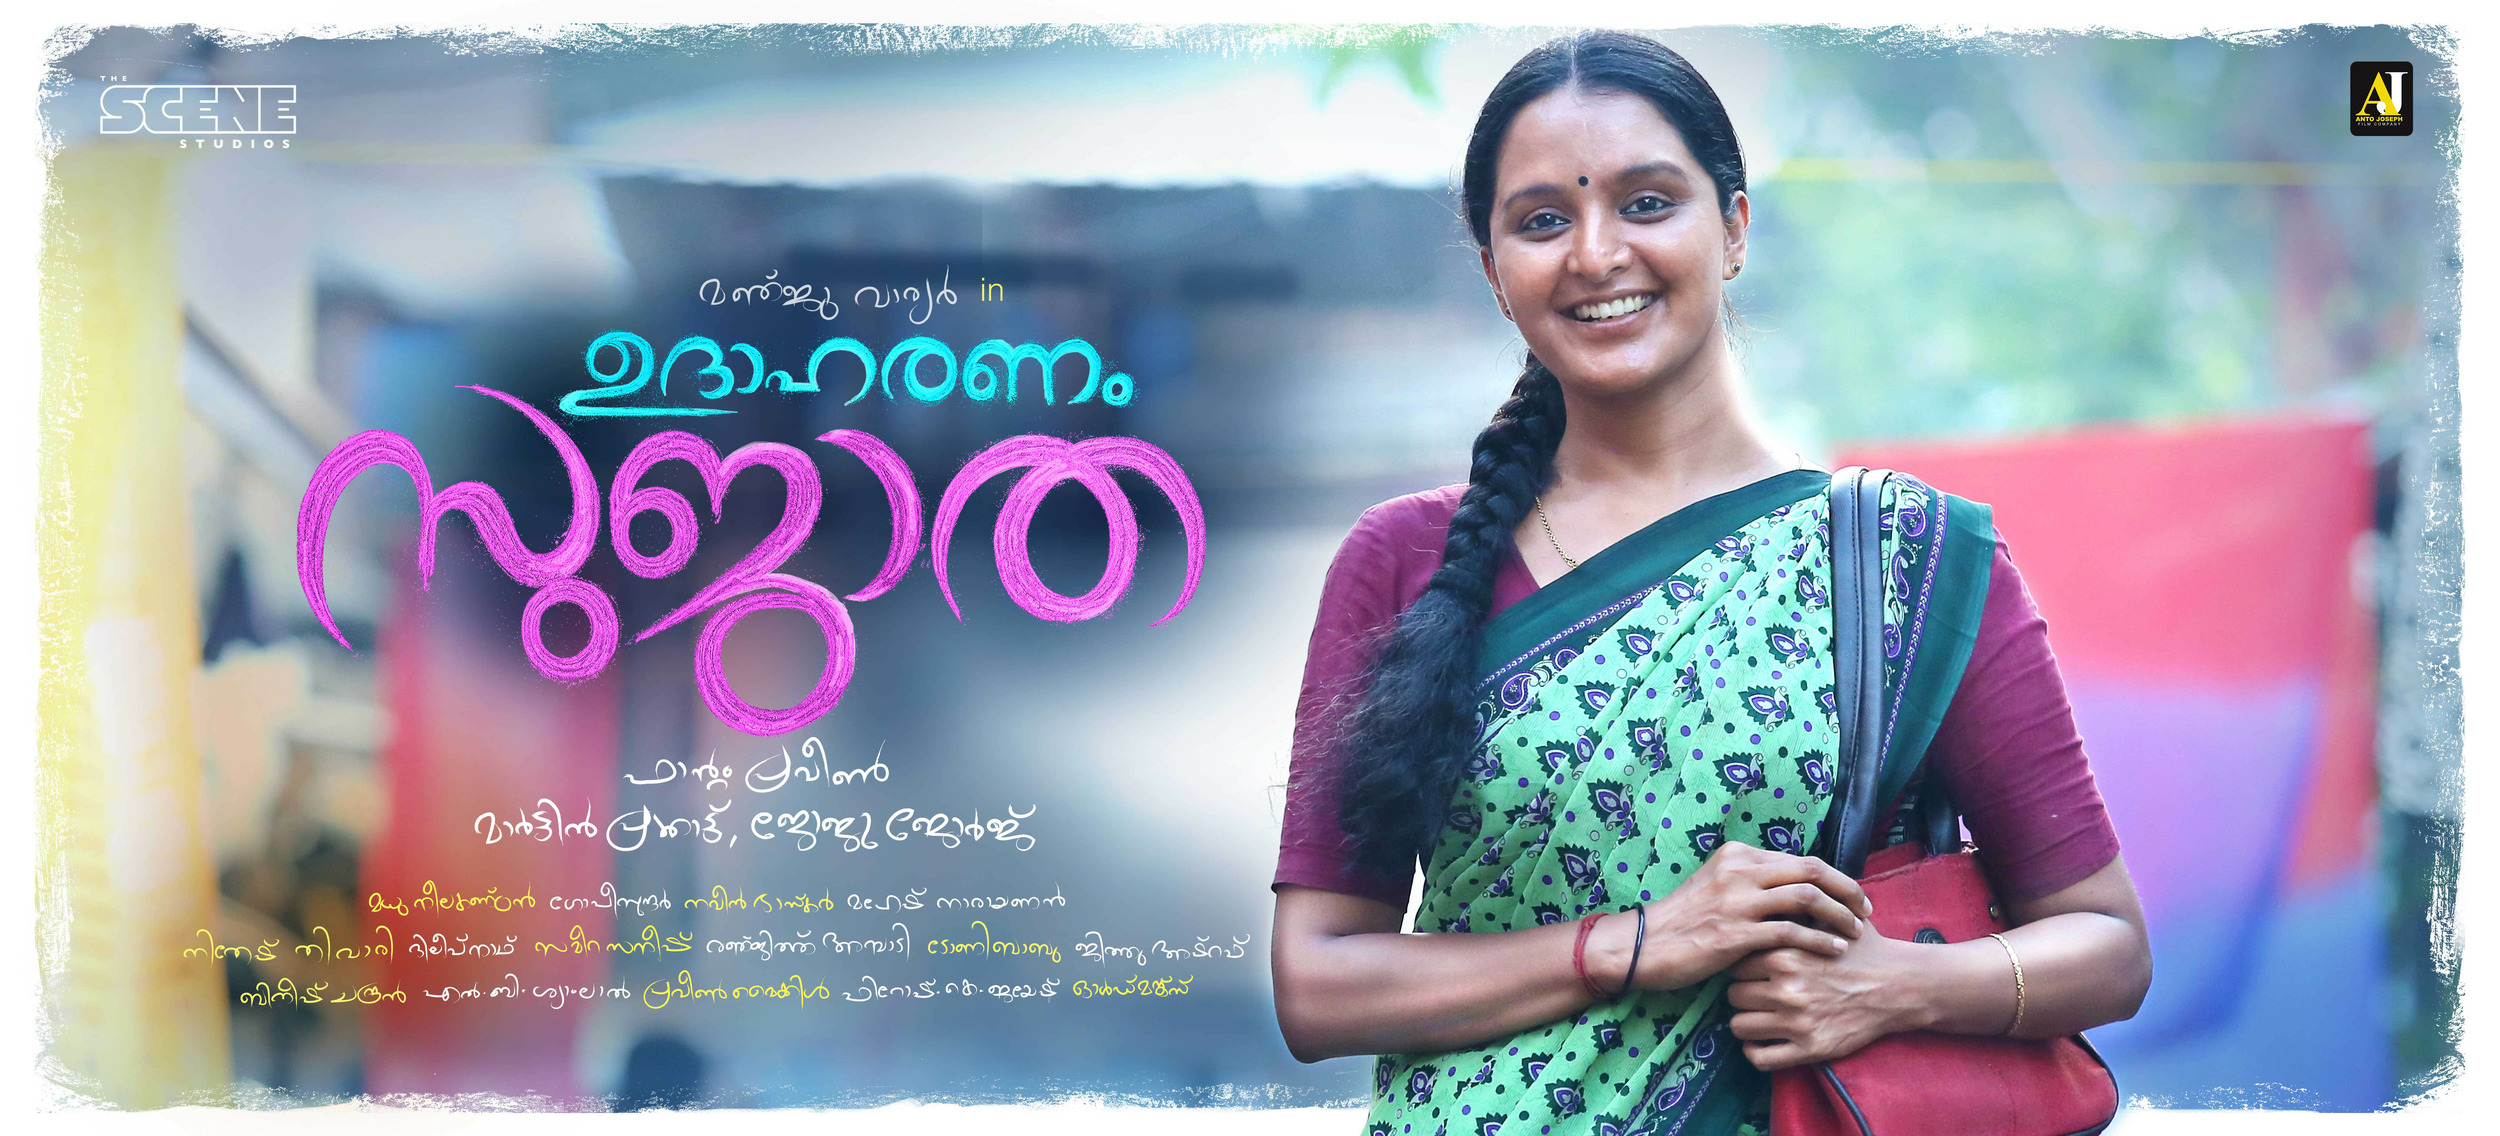 Mega Sized Movie Poster Image for Udhaharanam Sujatha (#4 of 5)